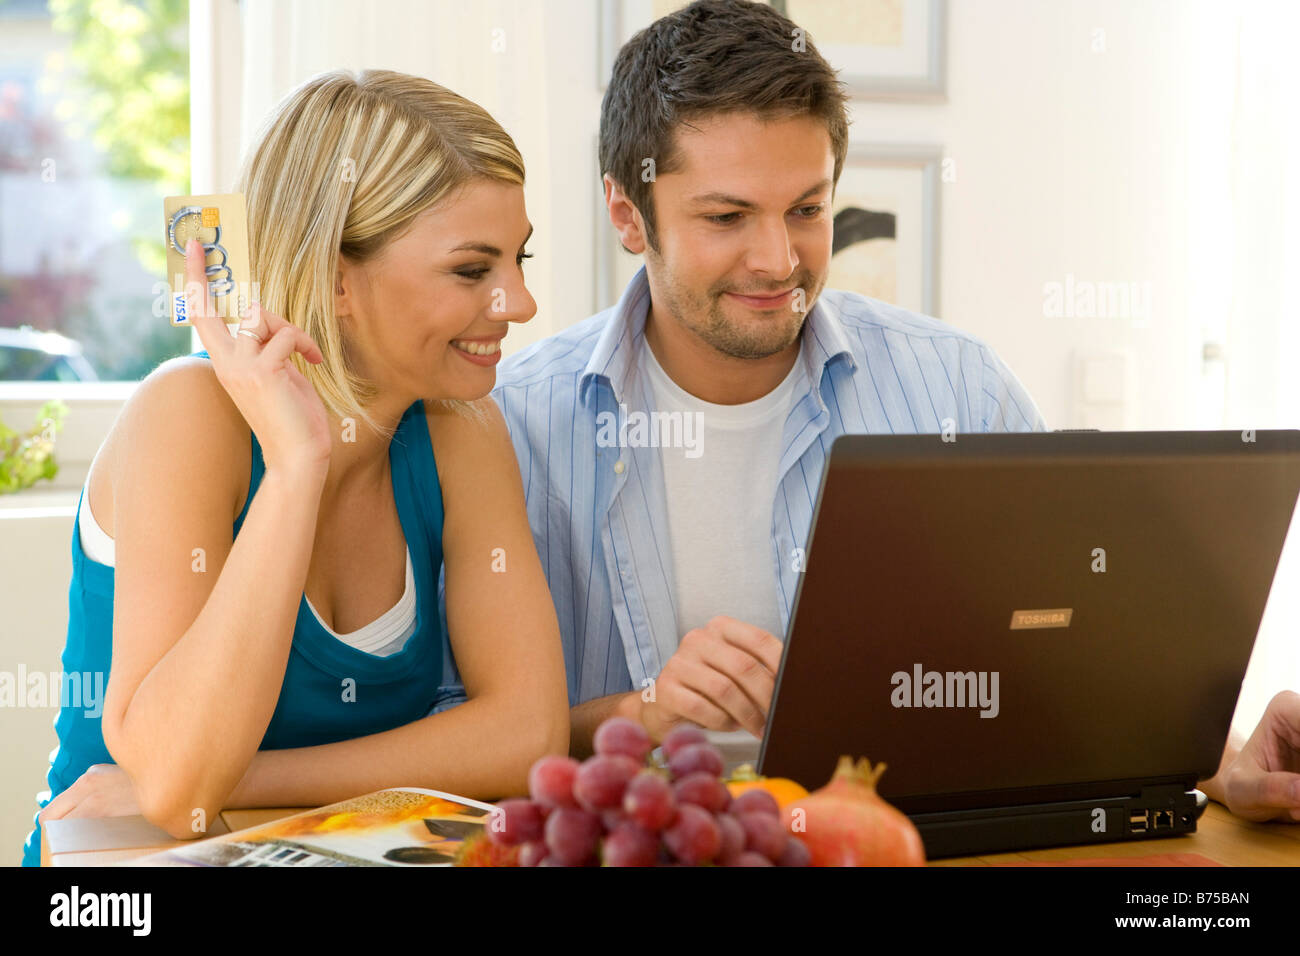 Junges Paar Surft Zusammen Im Internet, junges Paar, die das Surfen im Internet zusammen Stockfoto